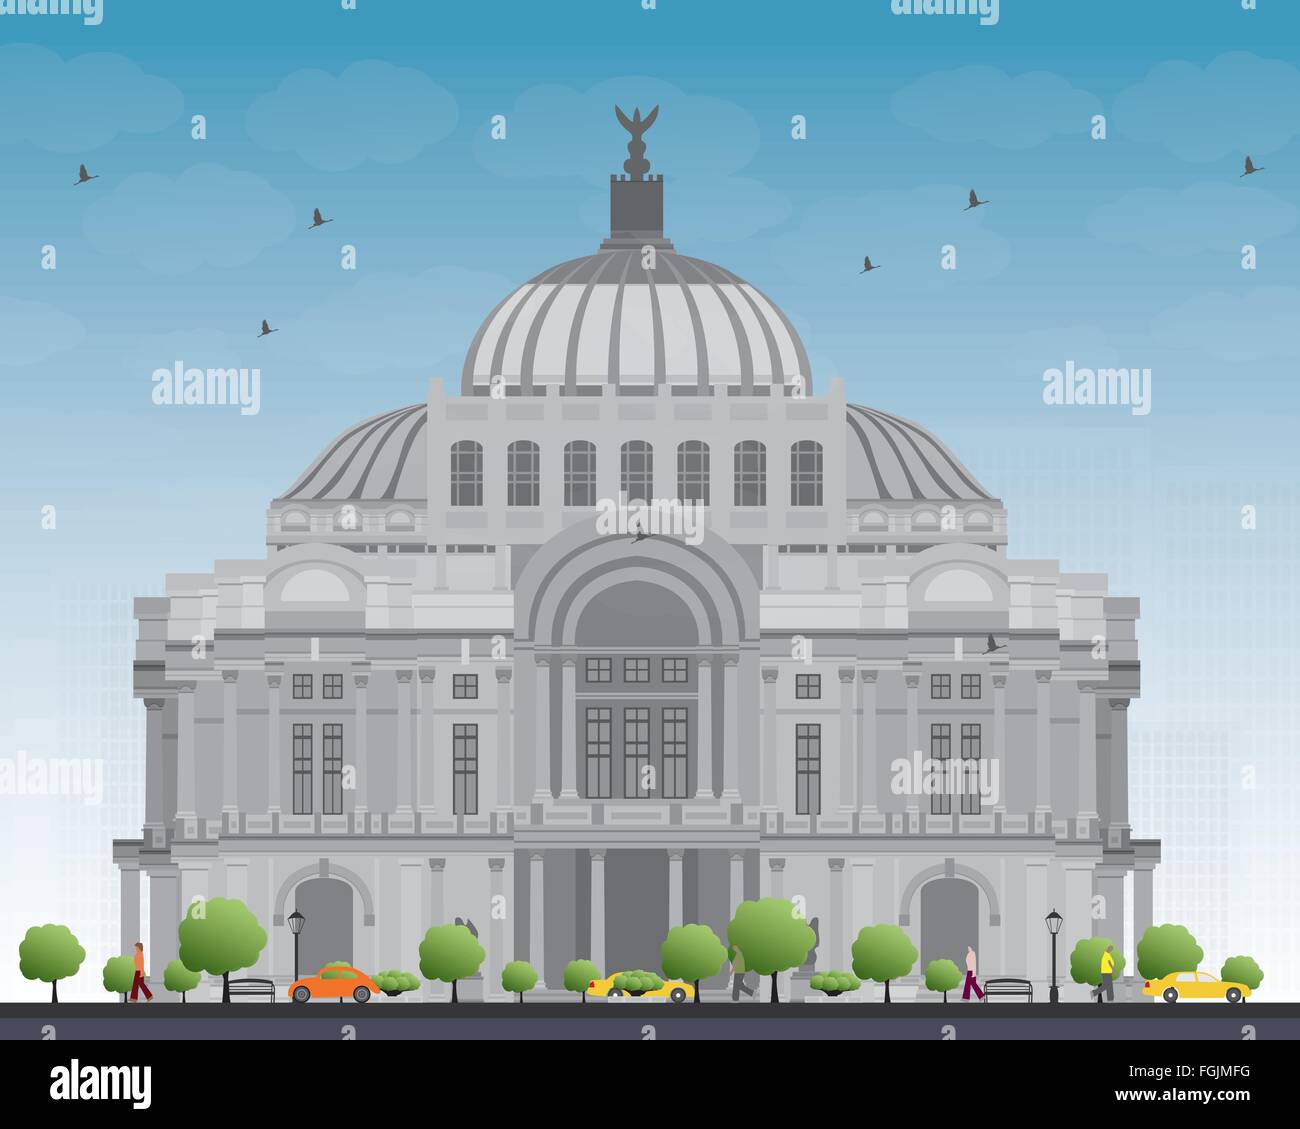 Der Palast der schönen Künste/Palacio de Bellas Artes in Mexico City, Mexiko. Vektor-Illustration. Geschäftsreisen und Tourismus-Konzept Stock Vektor